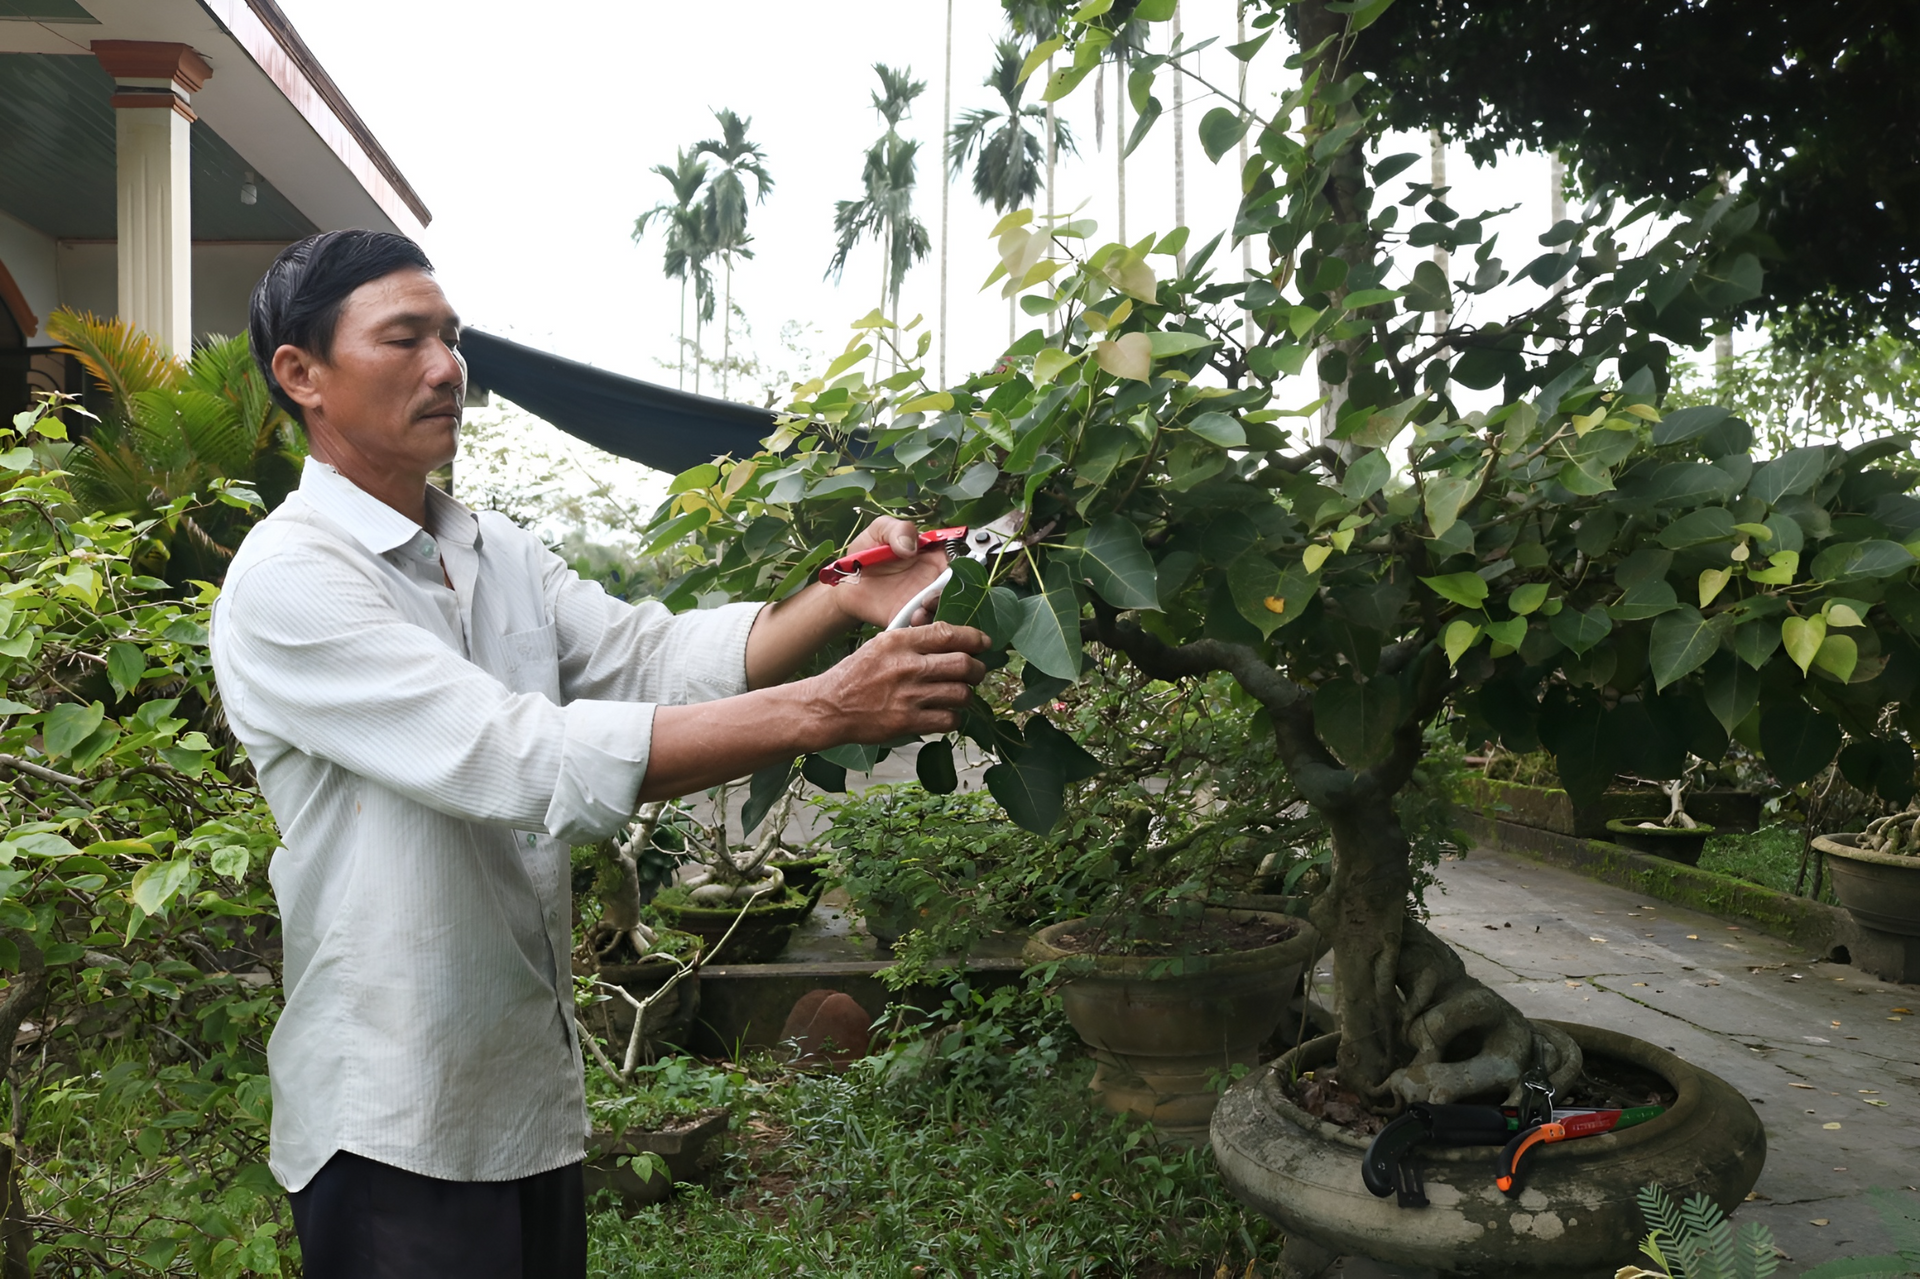 Ông Nguyễn Hồng Lâm hài lòng sử dụng bộ dụng cụ làm vườn vừa mới mua trên mạng